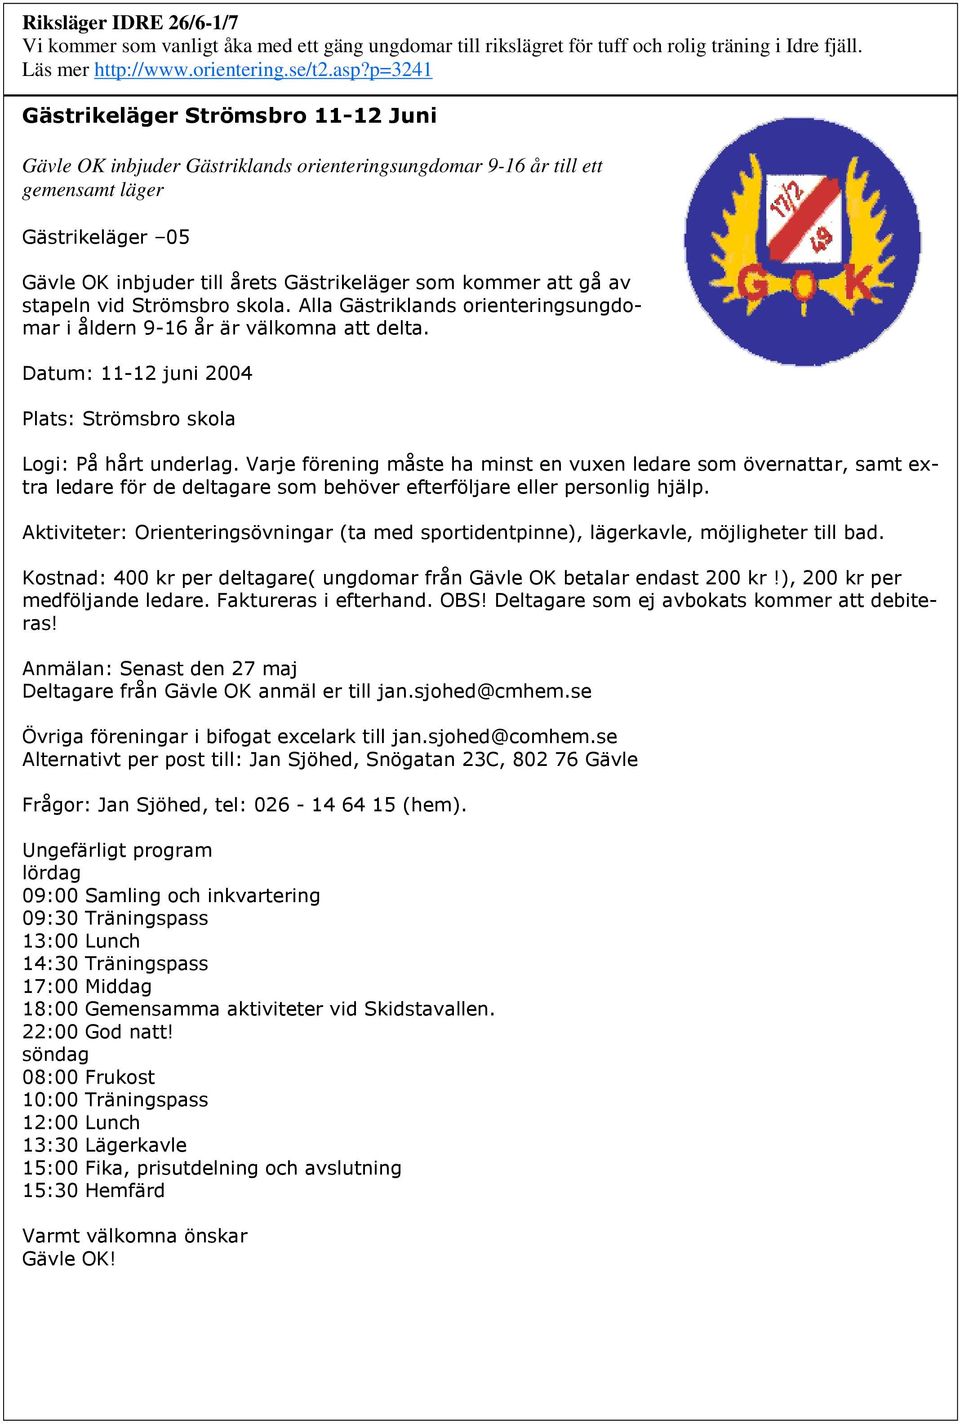 p=3241 Gävle OK inbjuder Gästriklands orienteringsungdomar 9-16 år till ett gemensamt läger!